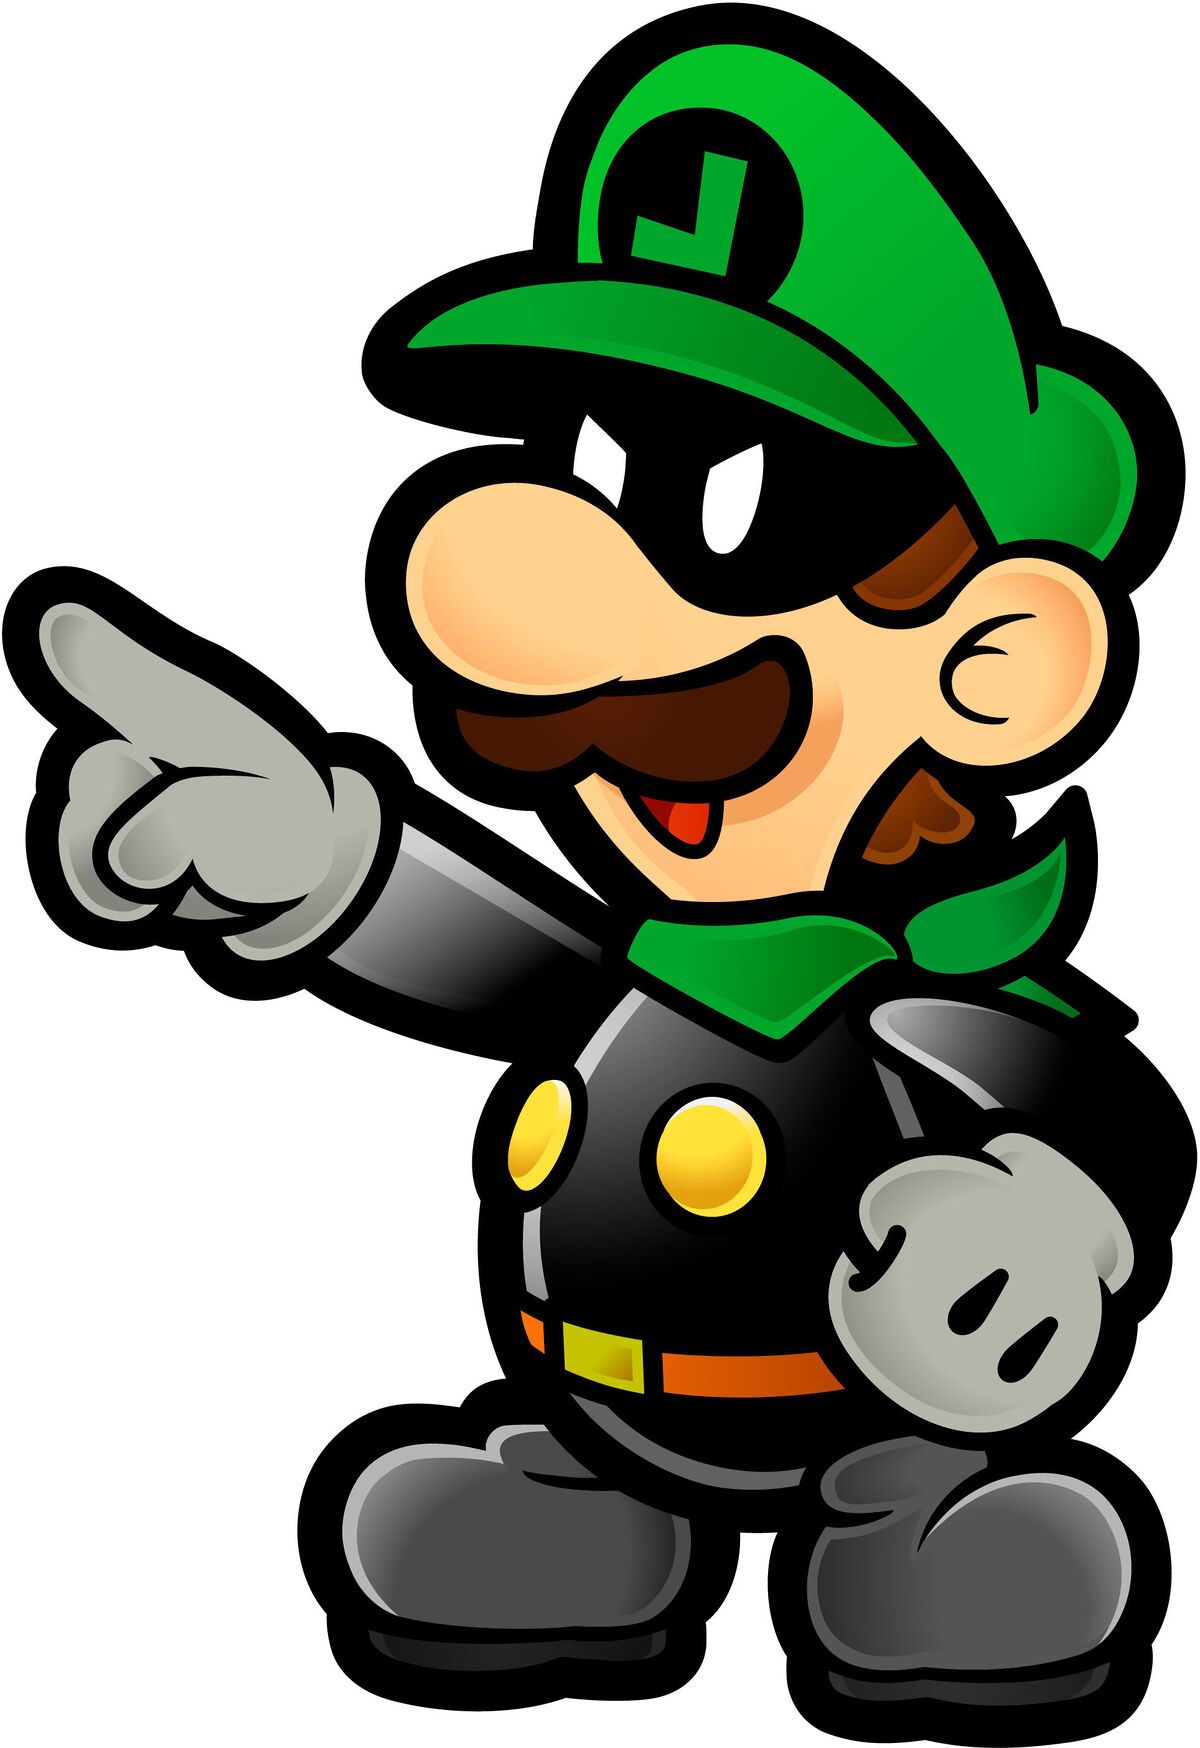 Mr L Super Mario Wiki The Mario Encyclopedia - evil dr mario roblox